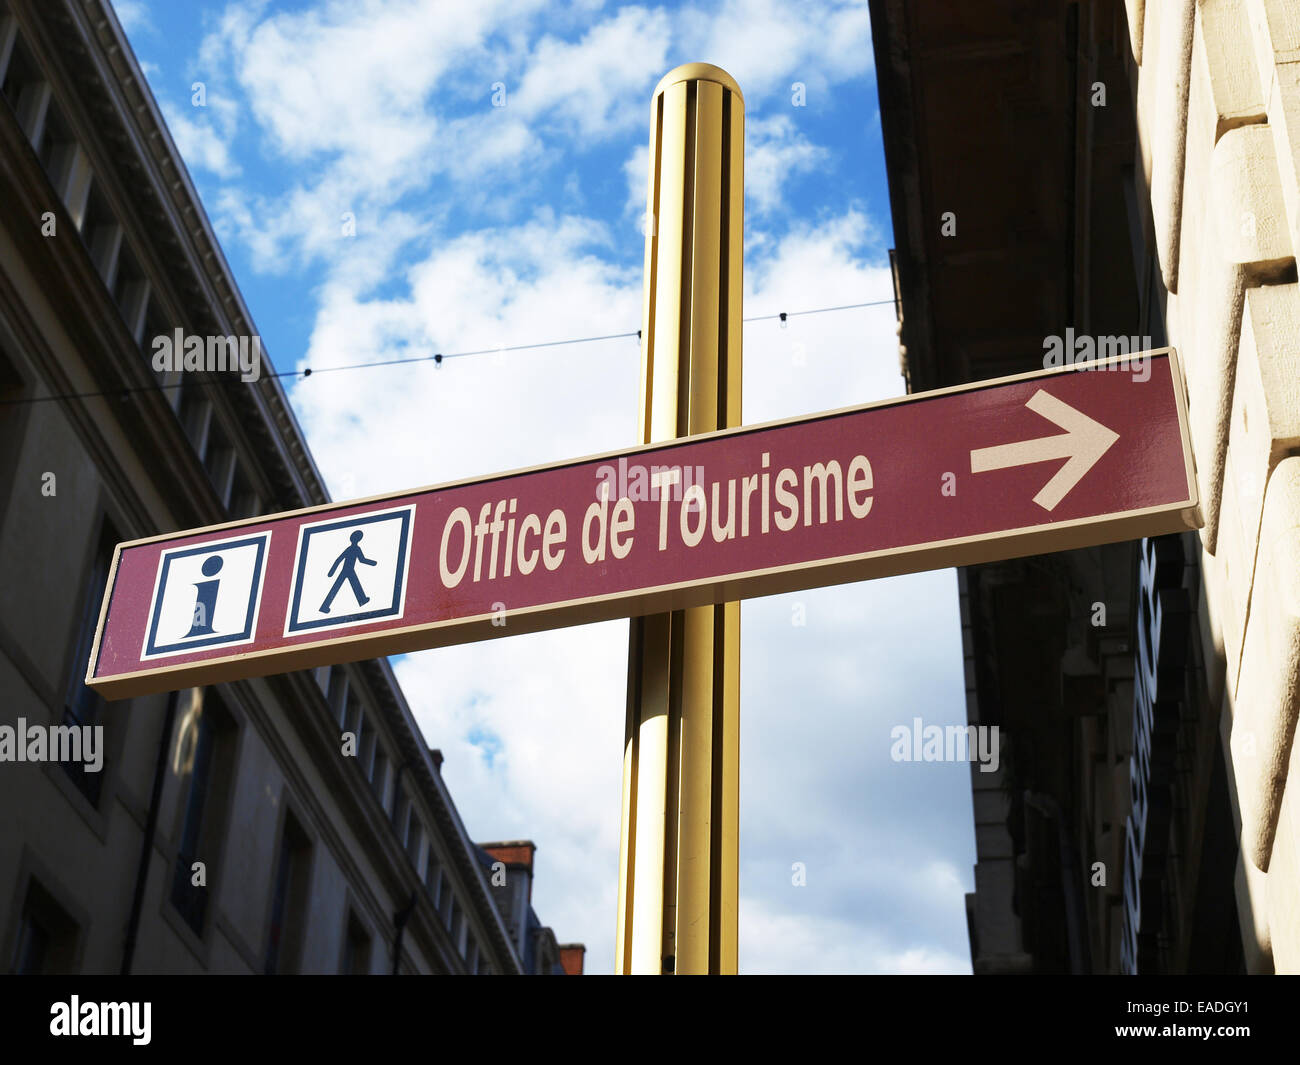 Office de Tourisme, France Stock Photo